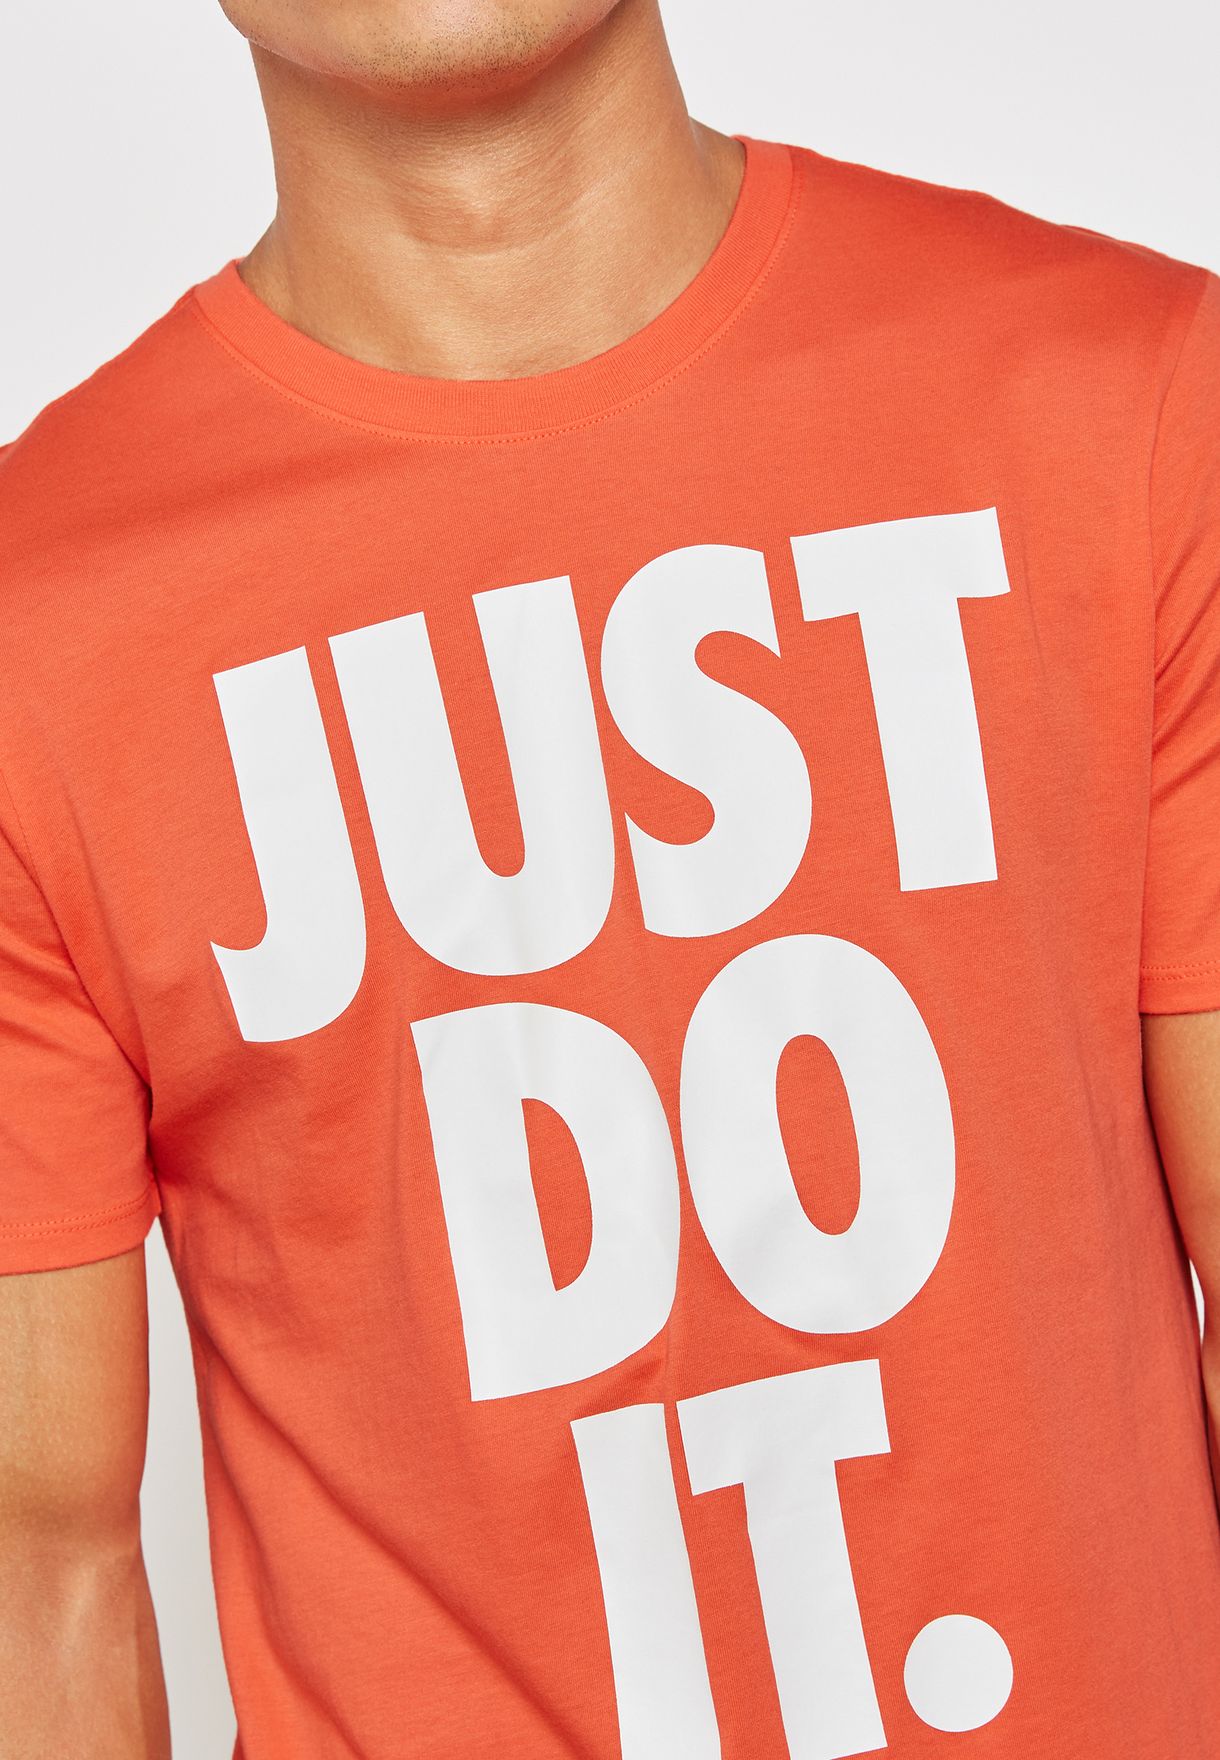 just do it nike shirt orange